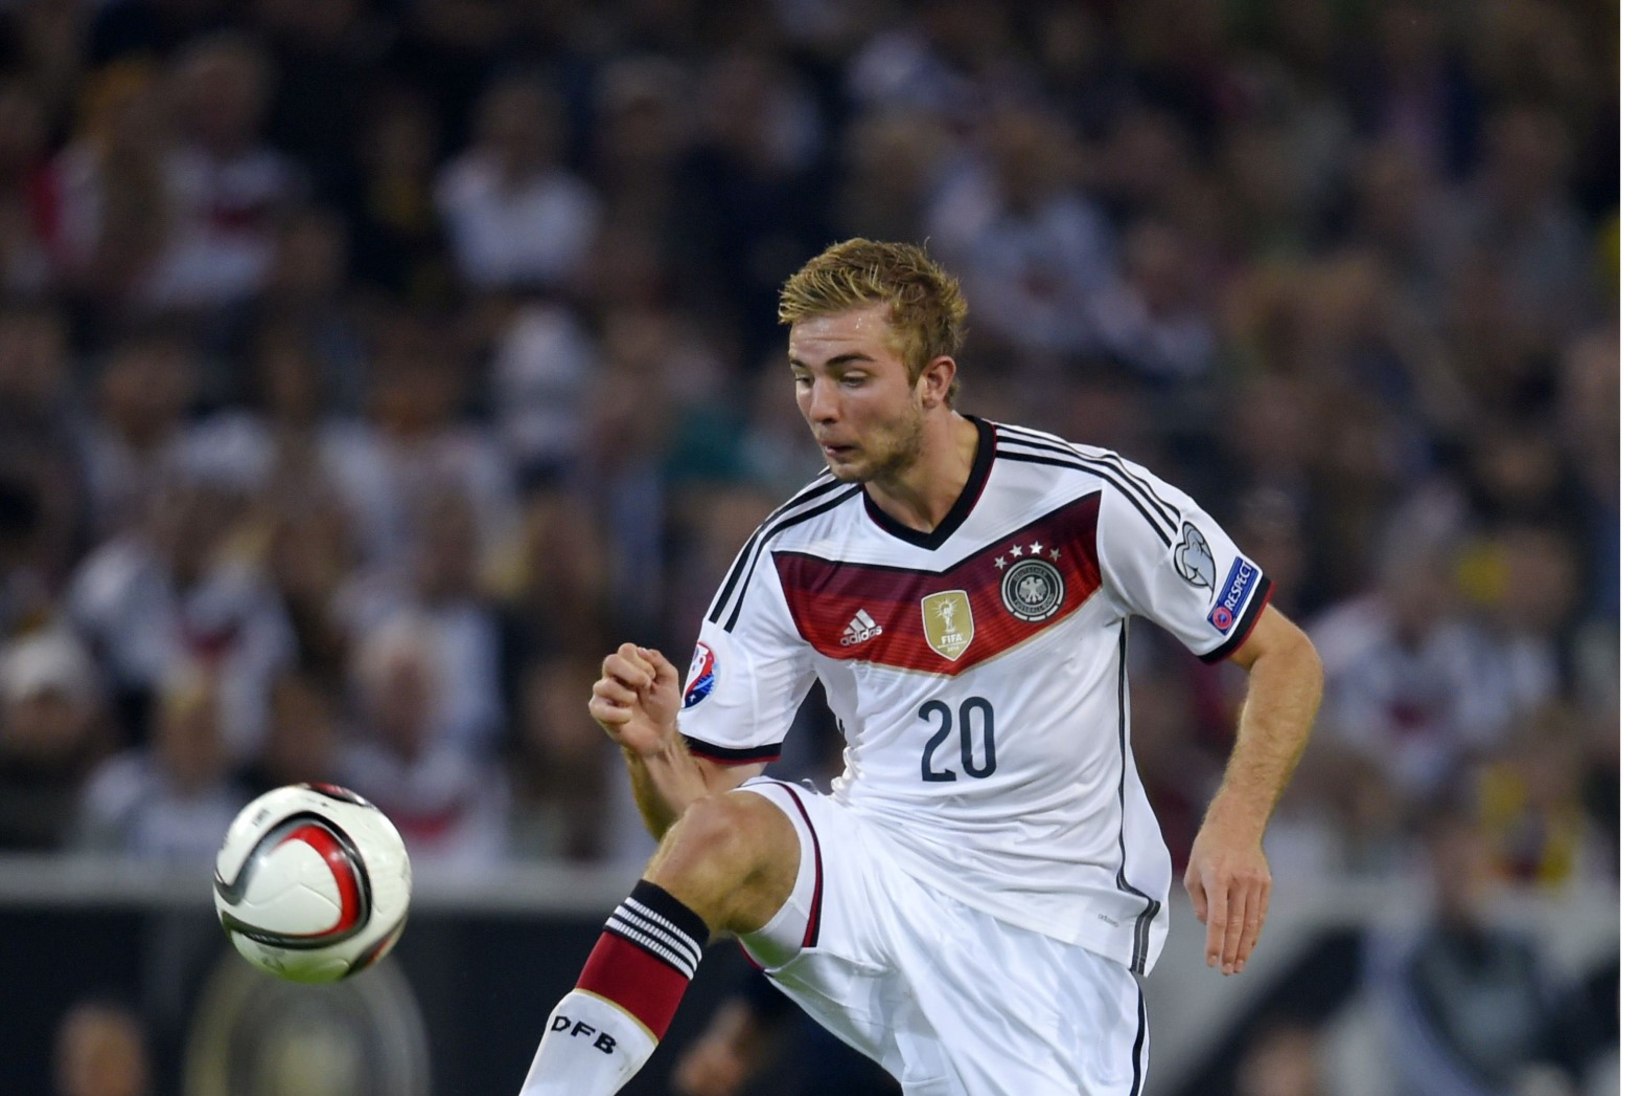 VIDEO: Ka nii saab! Saksamaa ja Šotimaa mängul tehti näpulusti